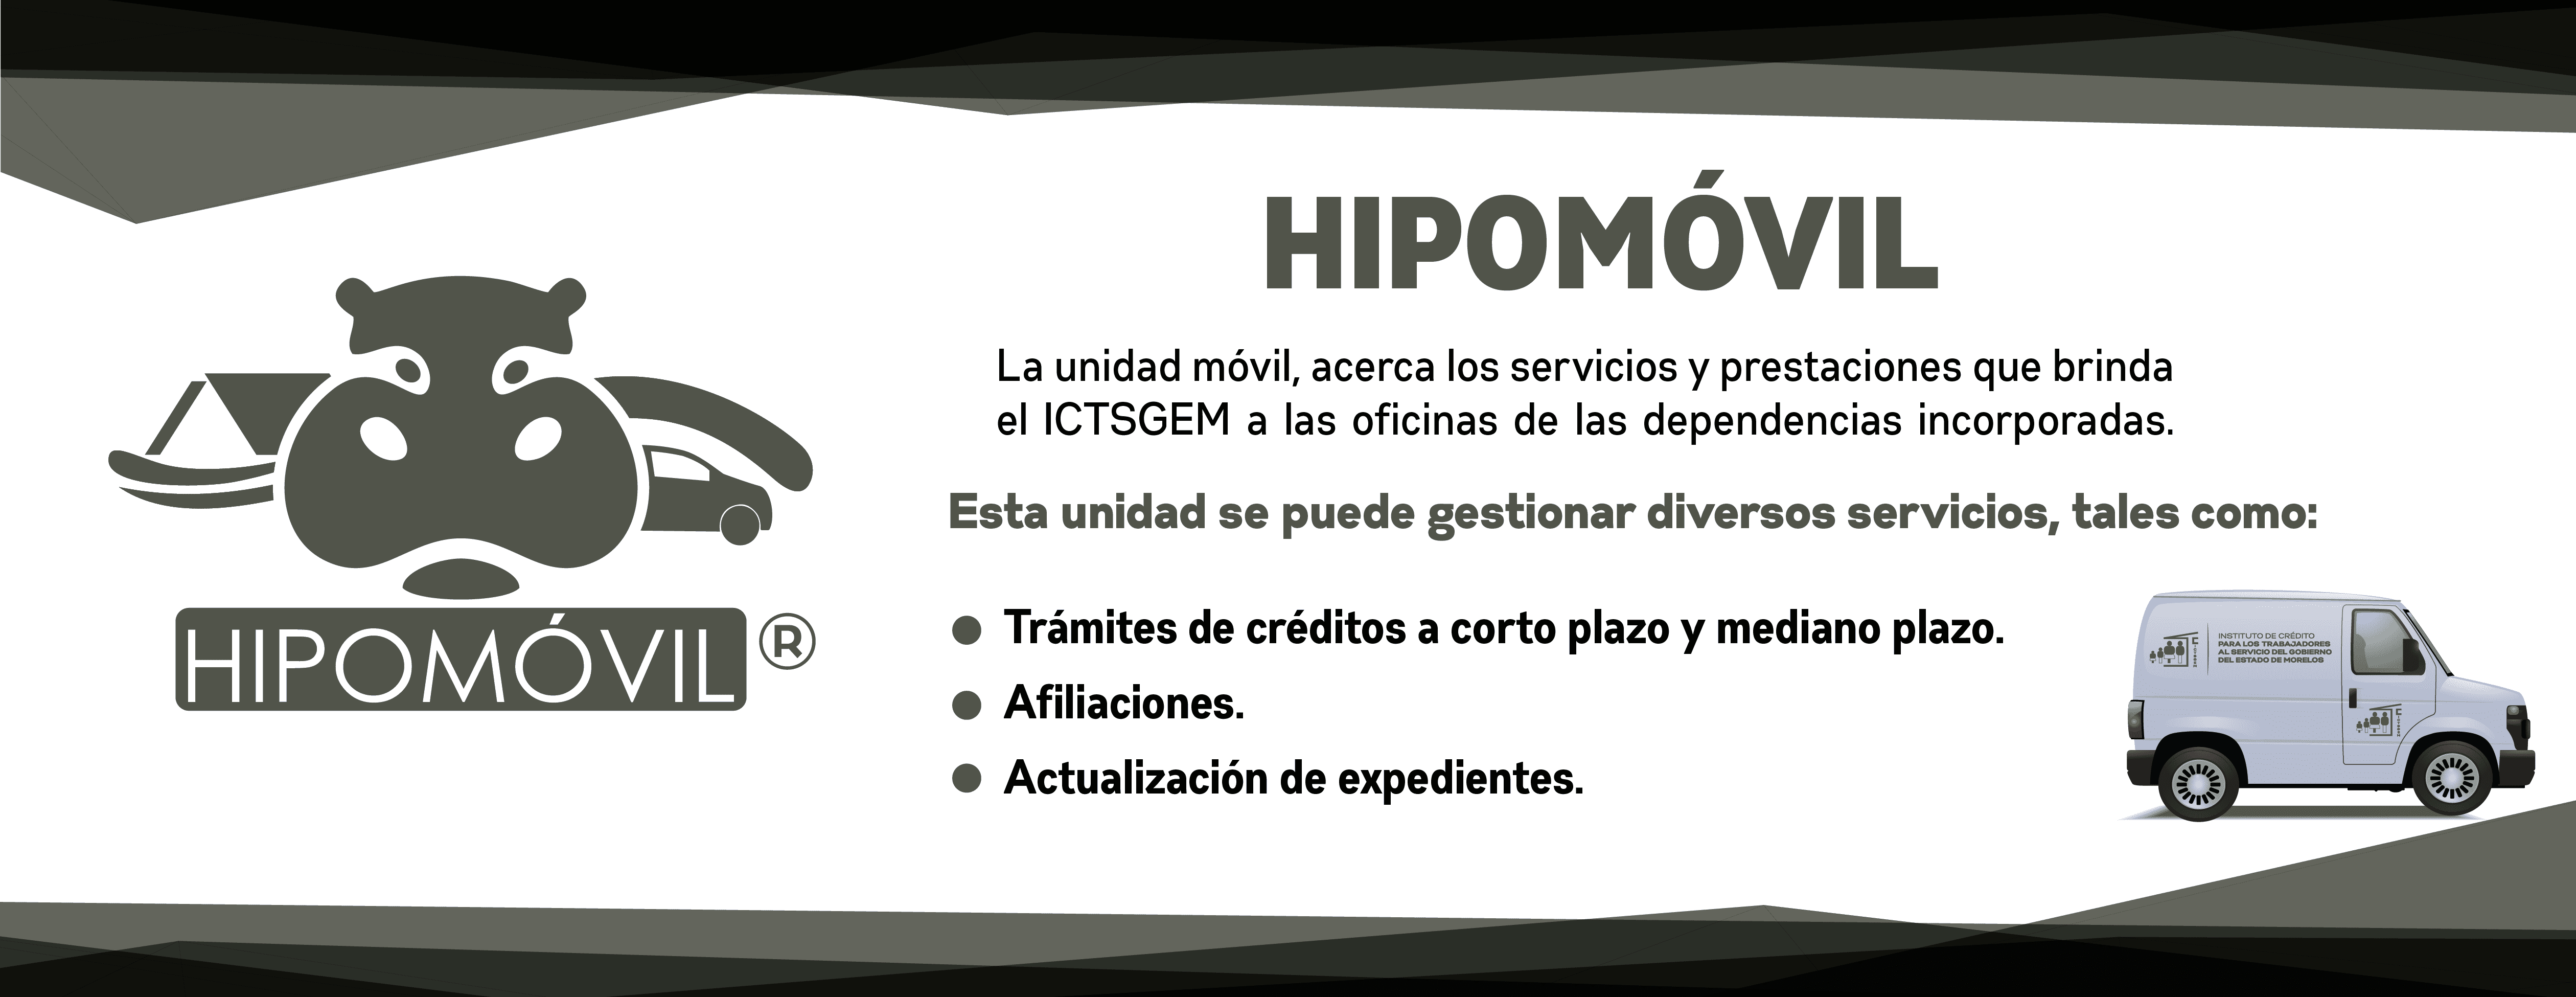 HIPOMOVIL